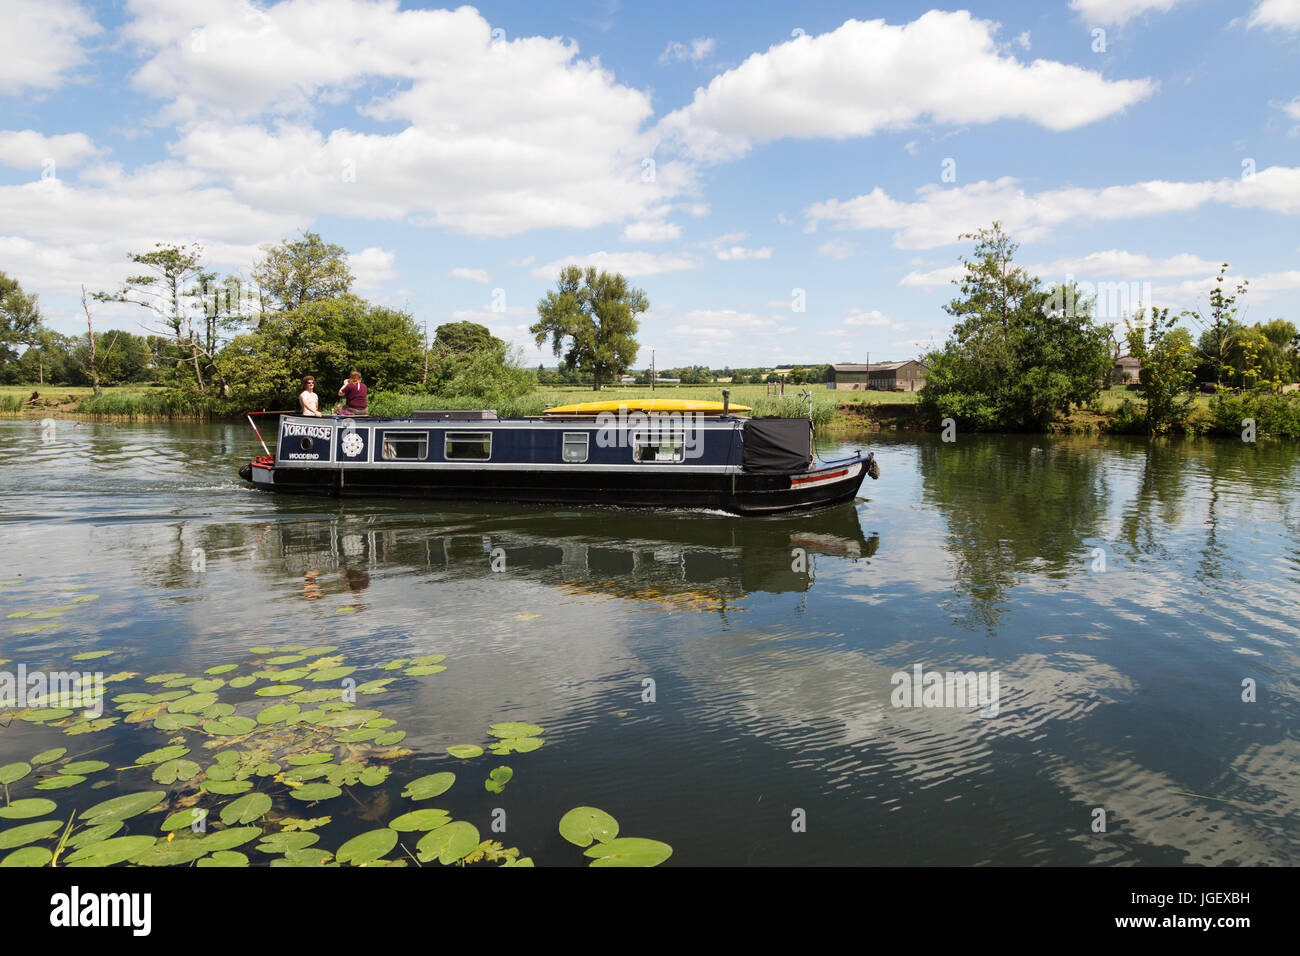 Bateau-canal Royaume-Uni ; personnes en vacances d'été dans un bateau-canal en été sur la Tamise à Wallingford, Oxfordshire Angleterre Royaume-Uni Banque D'Images